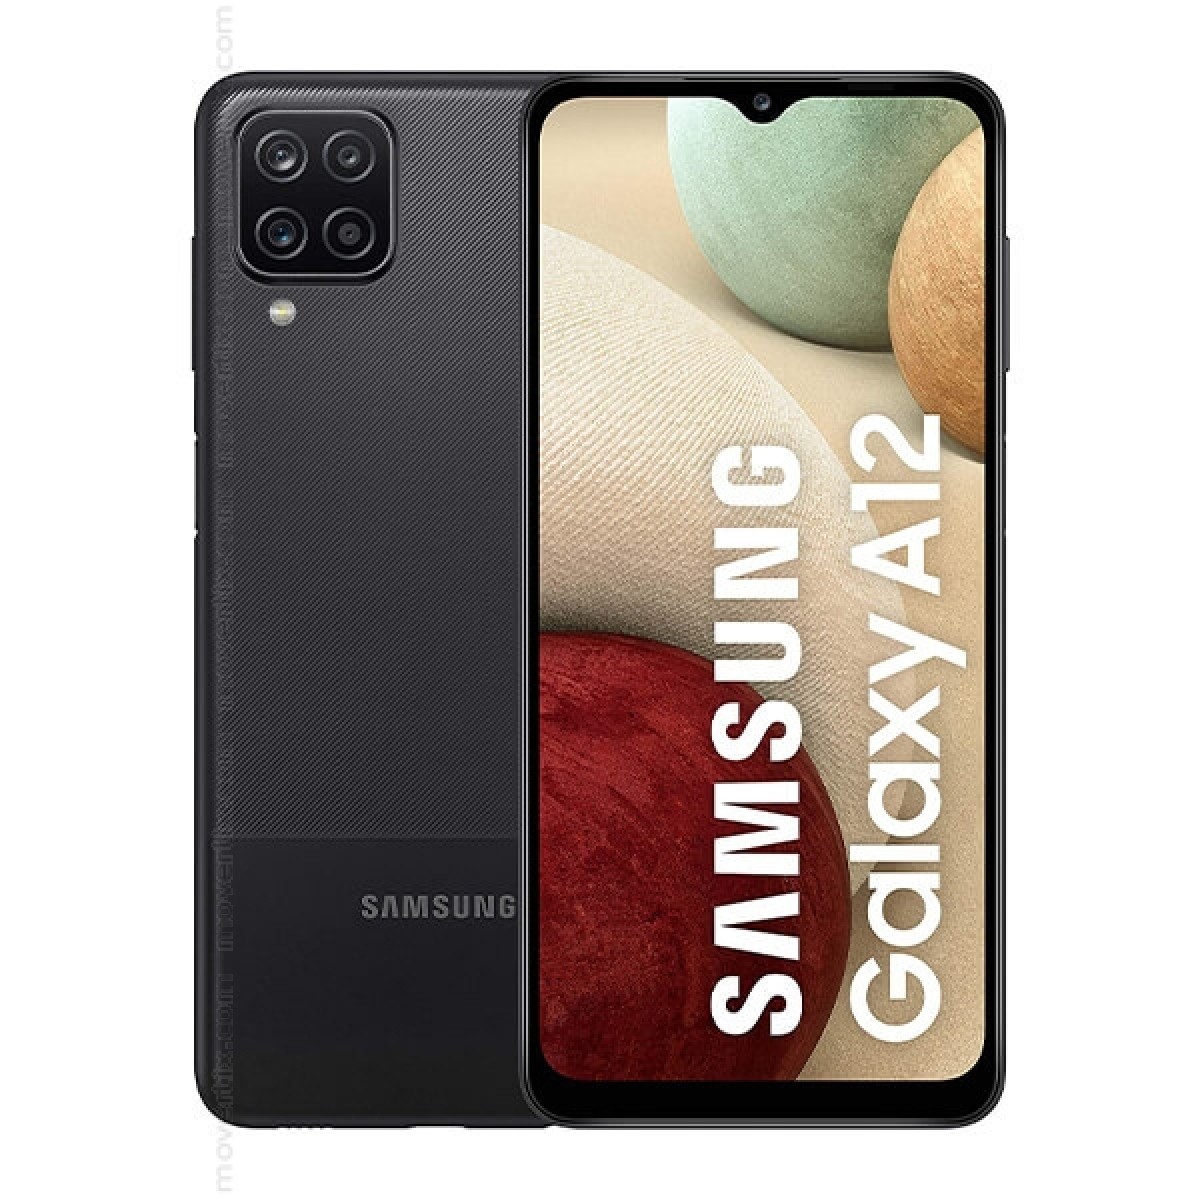 Samsung Galaxy A12 Dual SIM in Nero da 64GB e 4GB RAM - SM-A125F/DS ( 8806090828089) | Movertix Telefoni cellulari al miglior prezzo